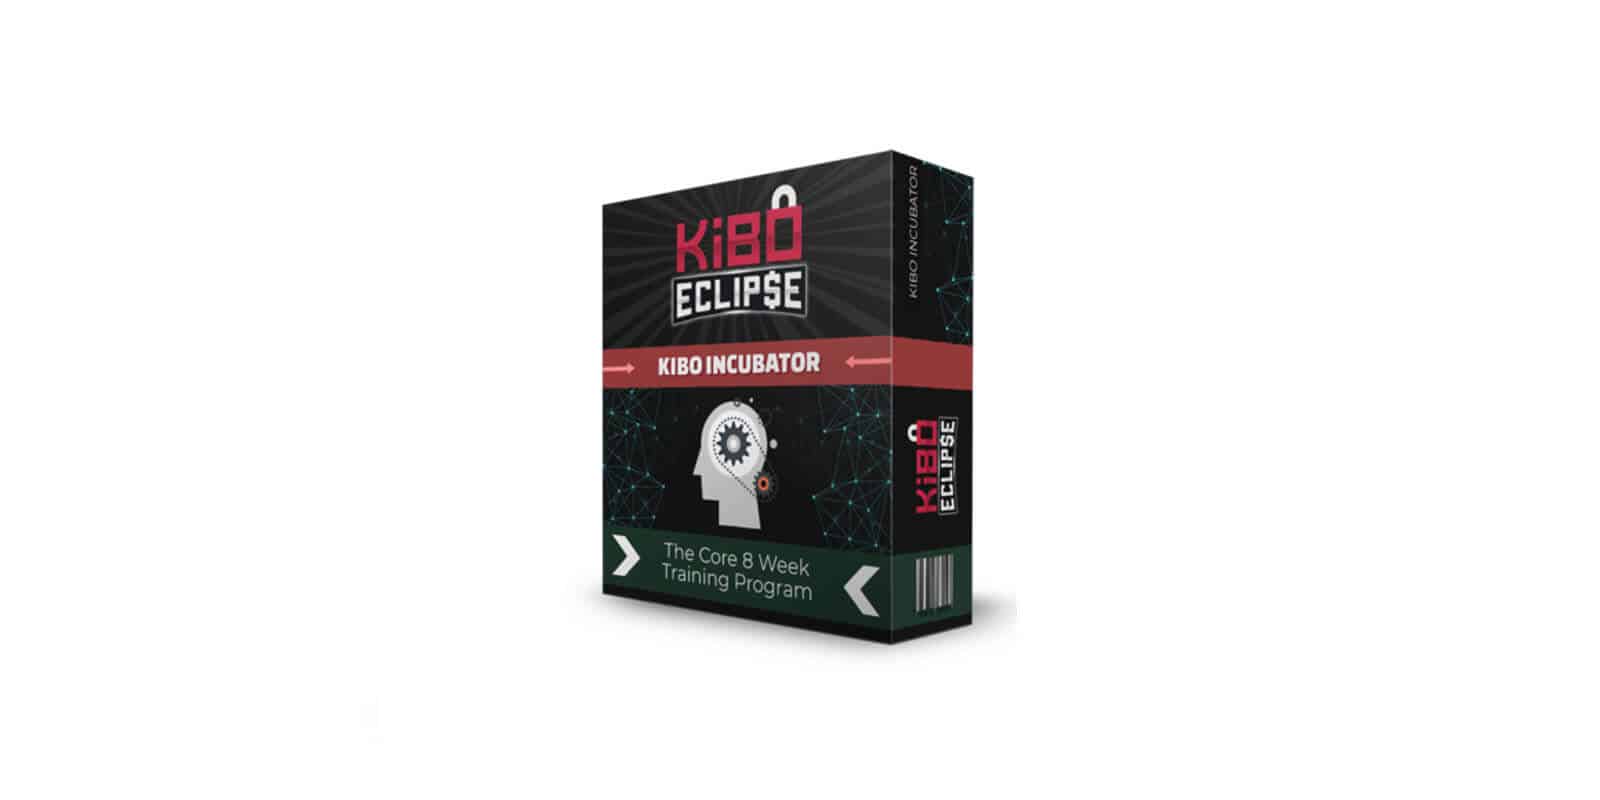 Kibo eclipse Kibo Incubator